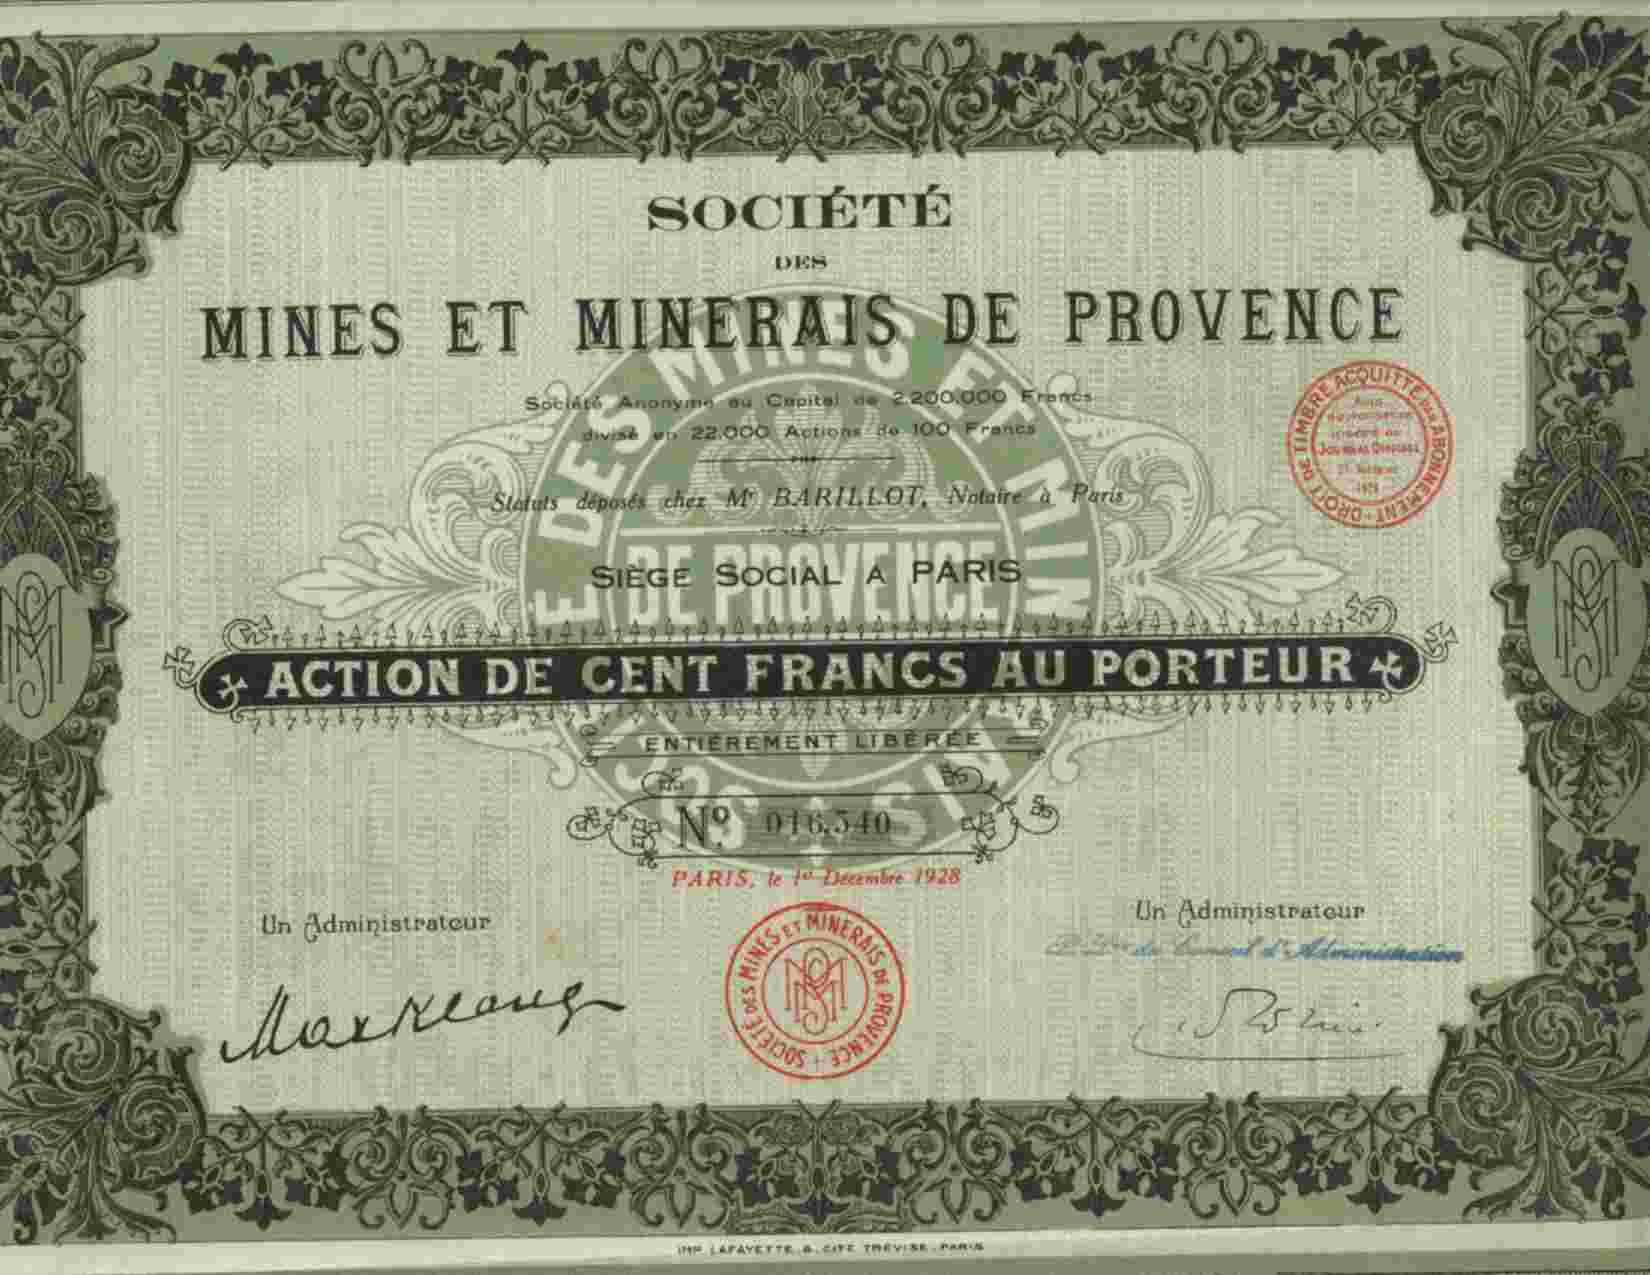 SOCIETE DES MINES ET MINERAIS DE PROVENCE - Mines